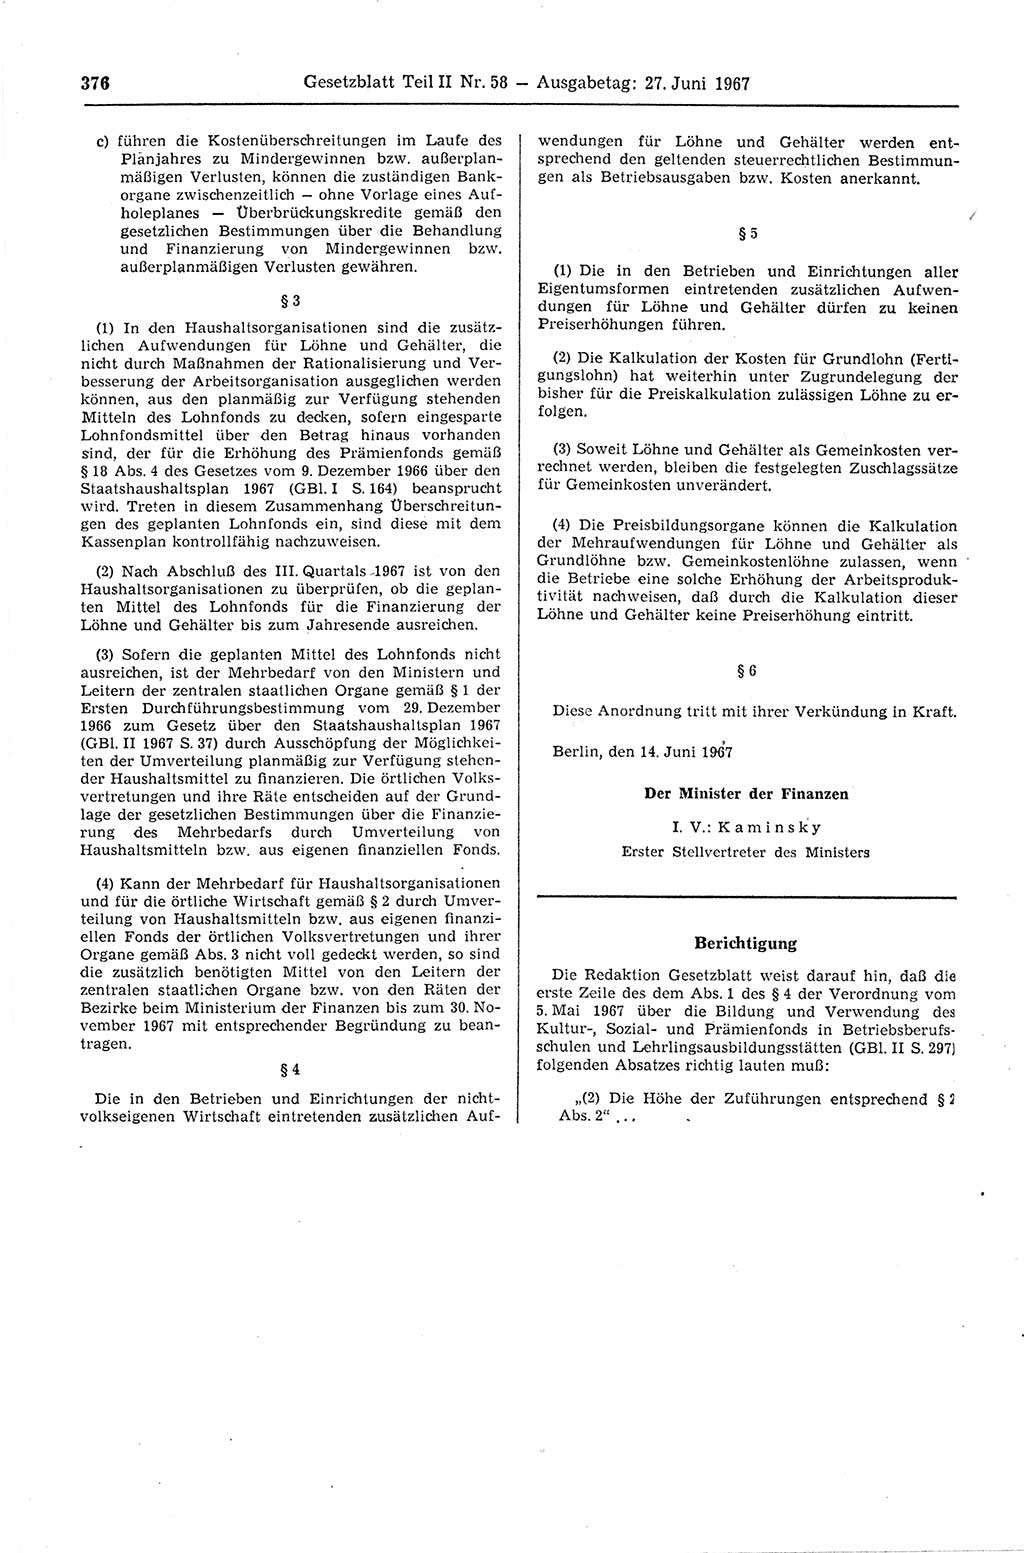 Gesetzblatt (GBl.) der Deutschen Demokratischen Republik (DDR) Teil ⅠⅠ 1967, Seite 376 (GBl. DDR ⅠⅠ 1967, S. 376)